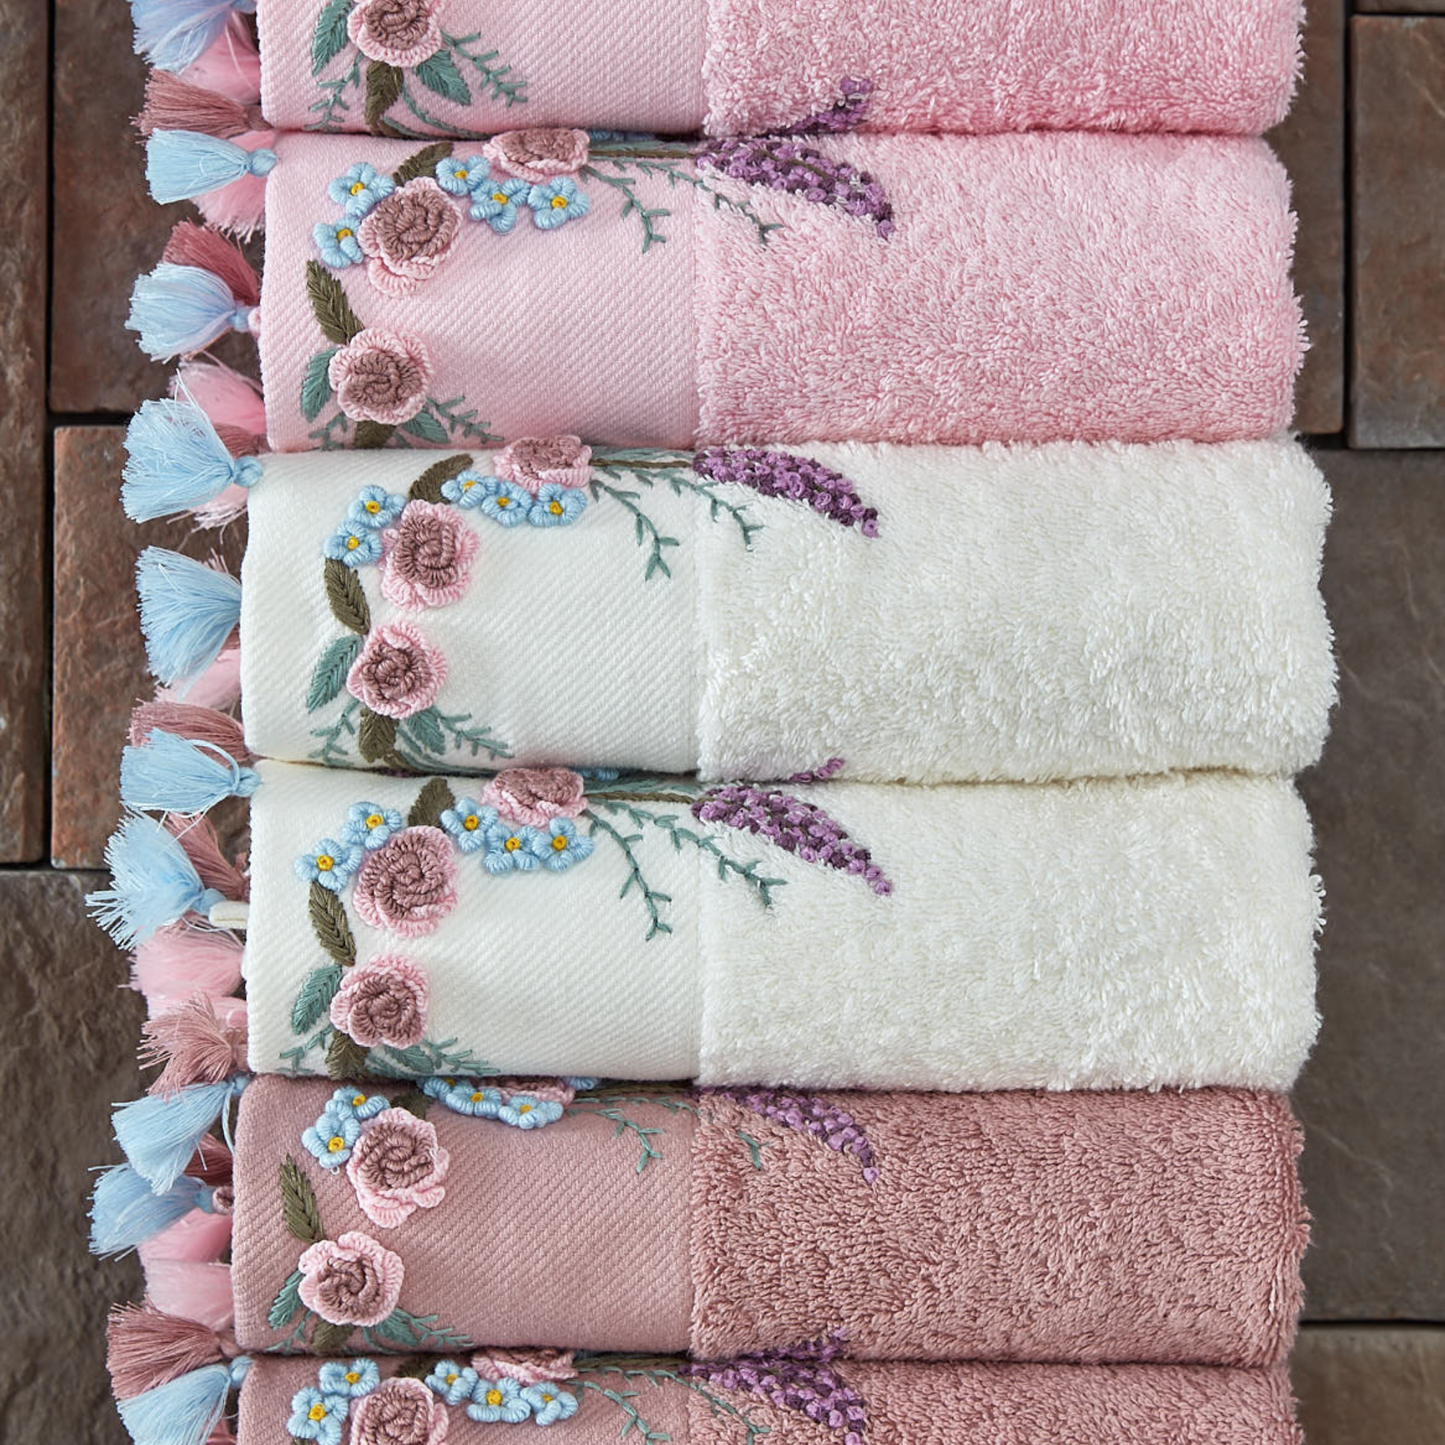 Lavender Hand Towel Set (6 pieces)